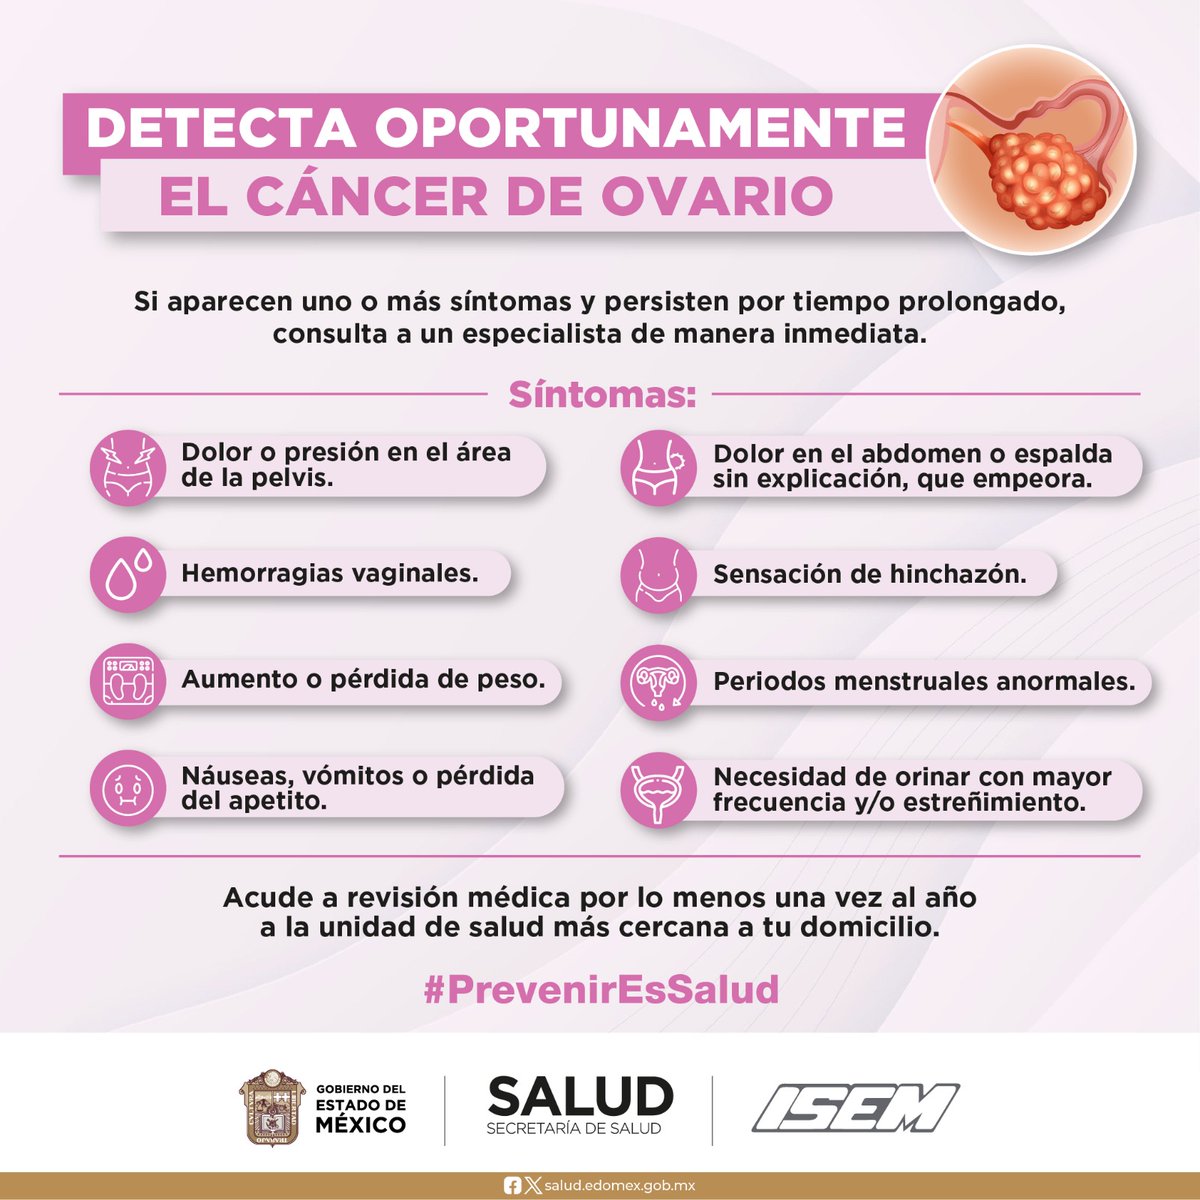 Conoce los síntomas del #CáncerDeOvario e identifica los factores de riesgo.
Acude a revisión médica por lo menos una vez al año.
#PrevenirEsSalud